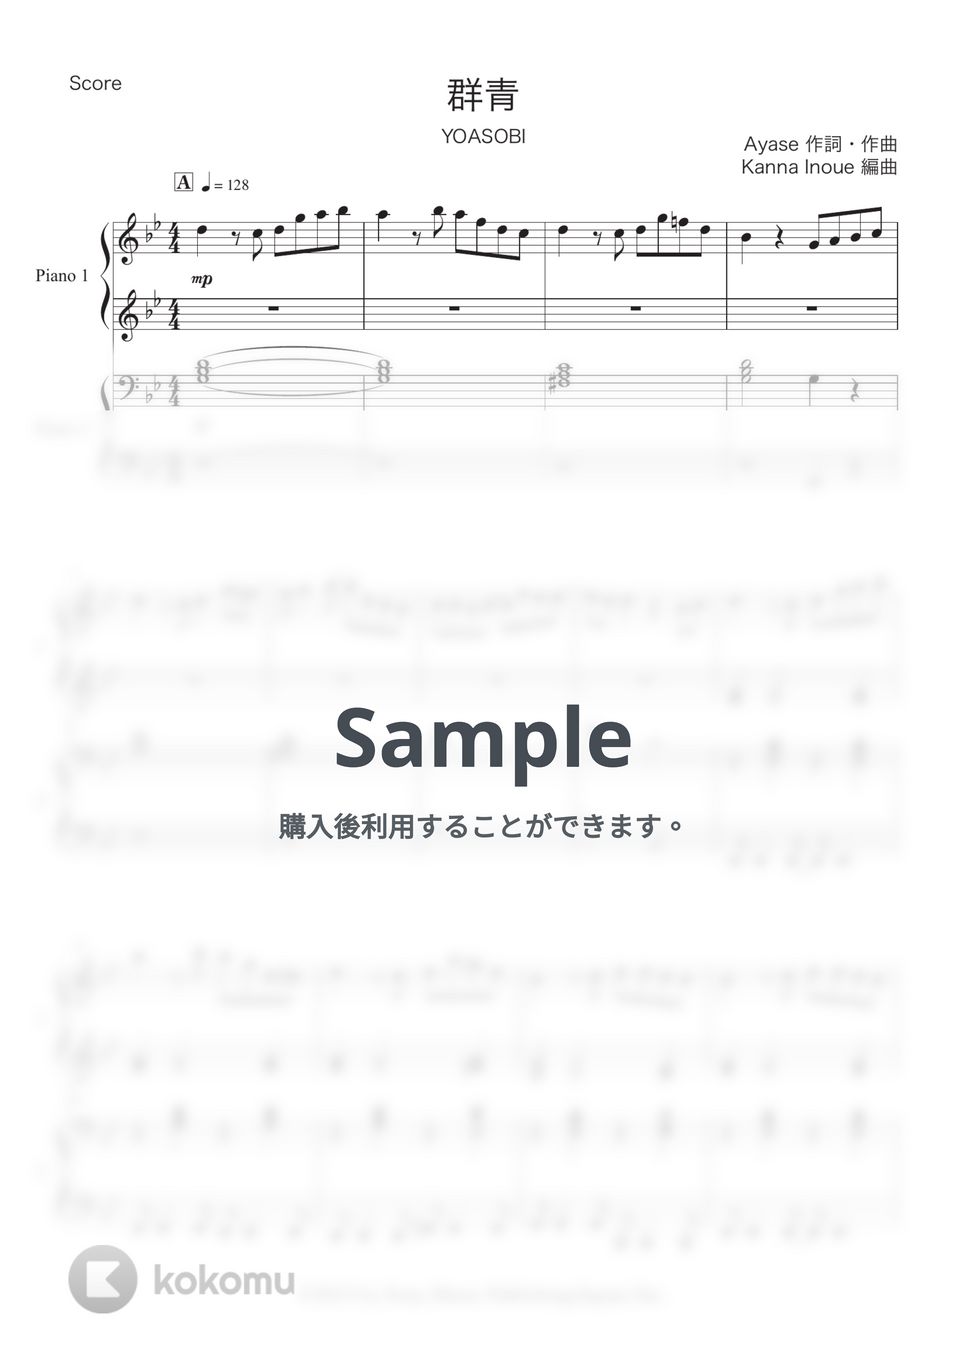 YOASOBI - 群青 (ピアノ連弾 / 簡単) by Kanna Inoue